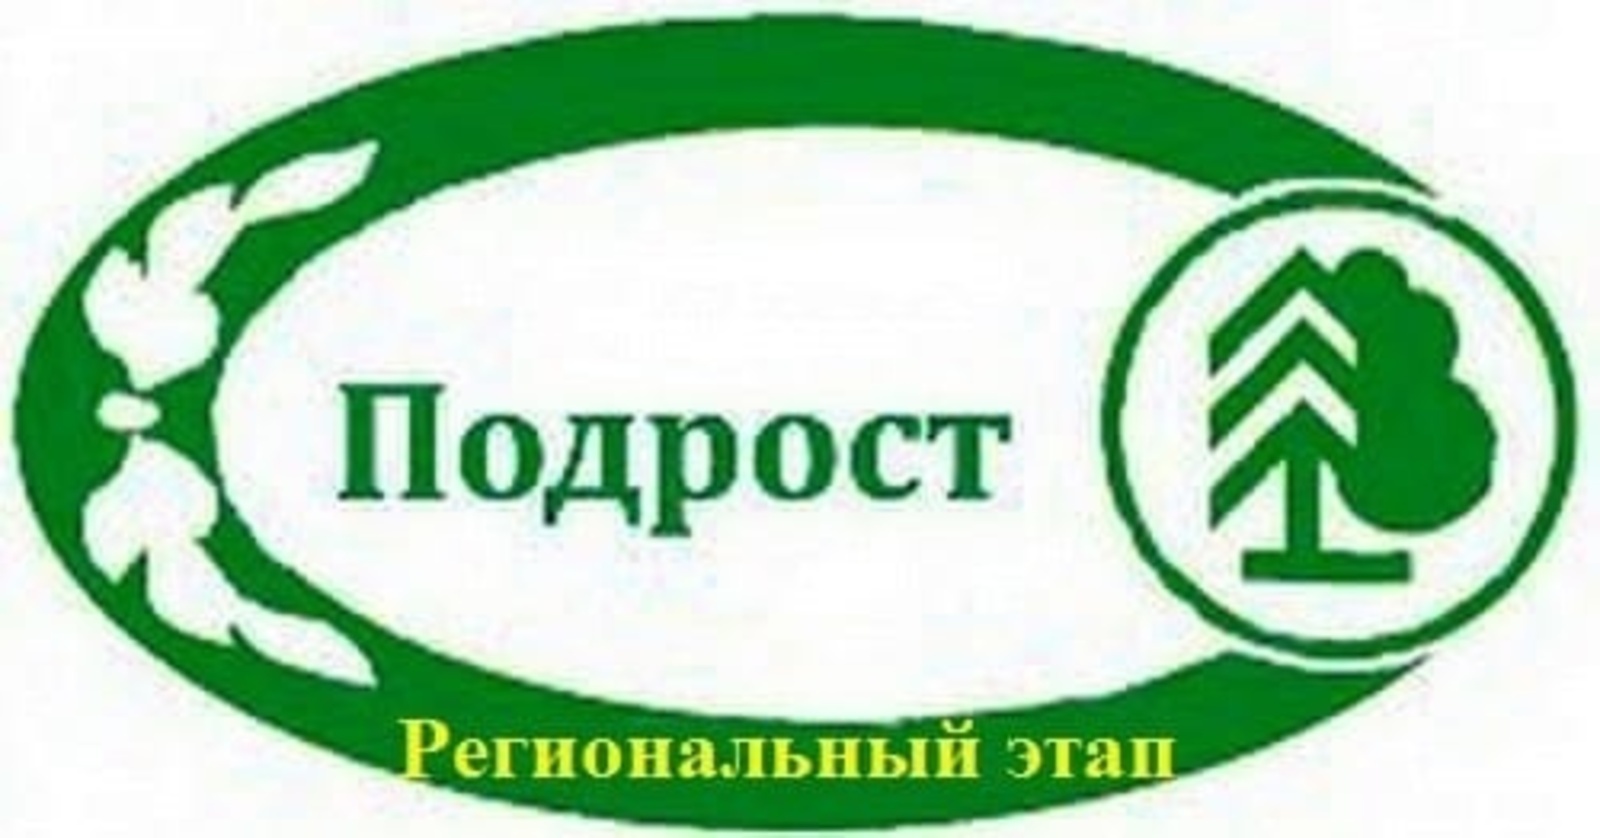 В Башкортостане подведены итоги регионального этапа конкурса «Подрост»